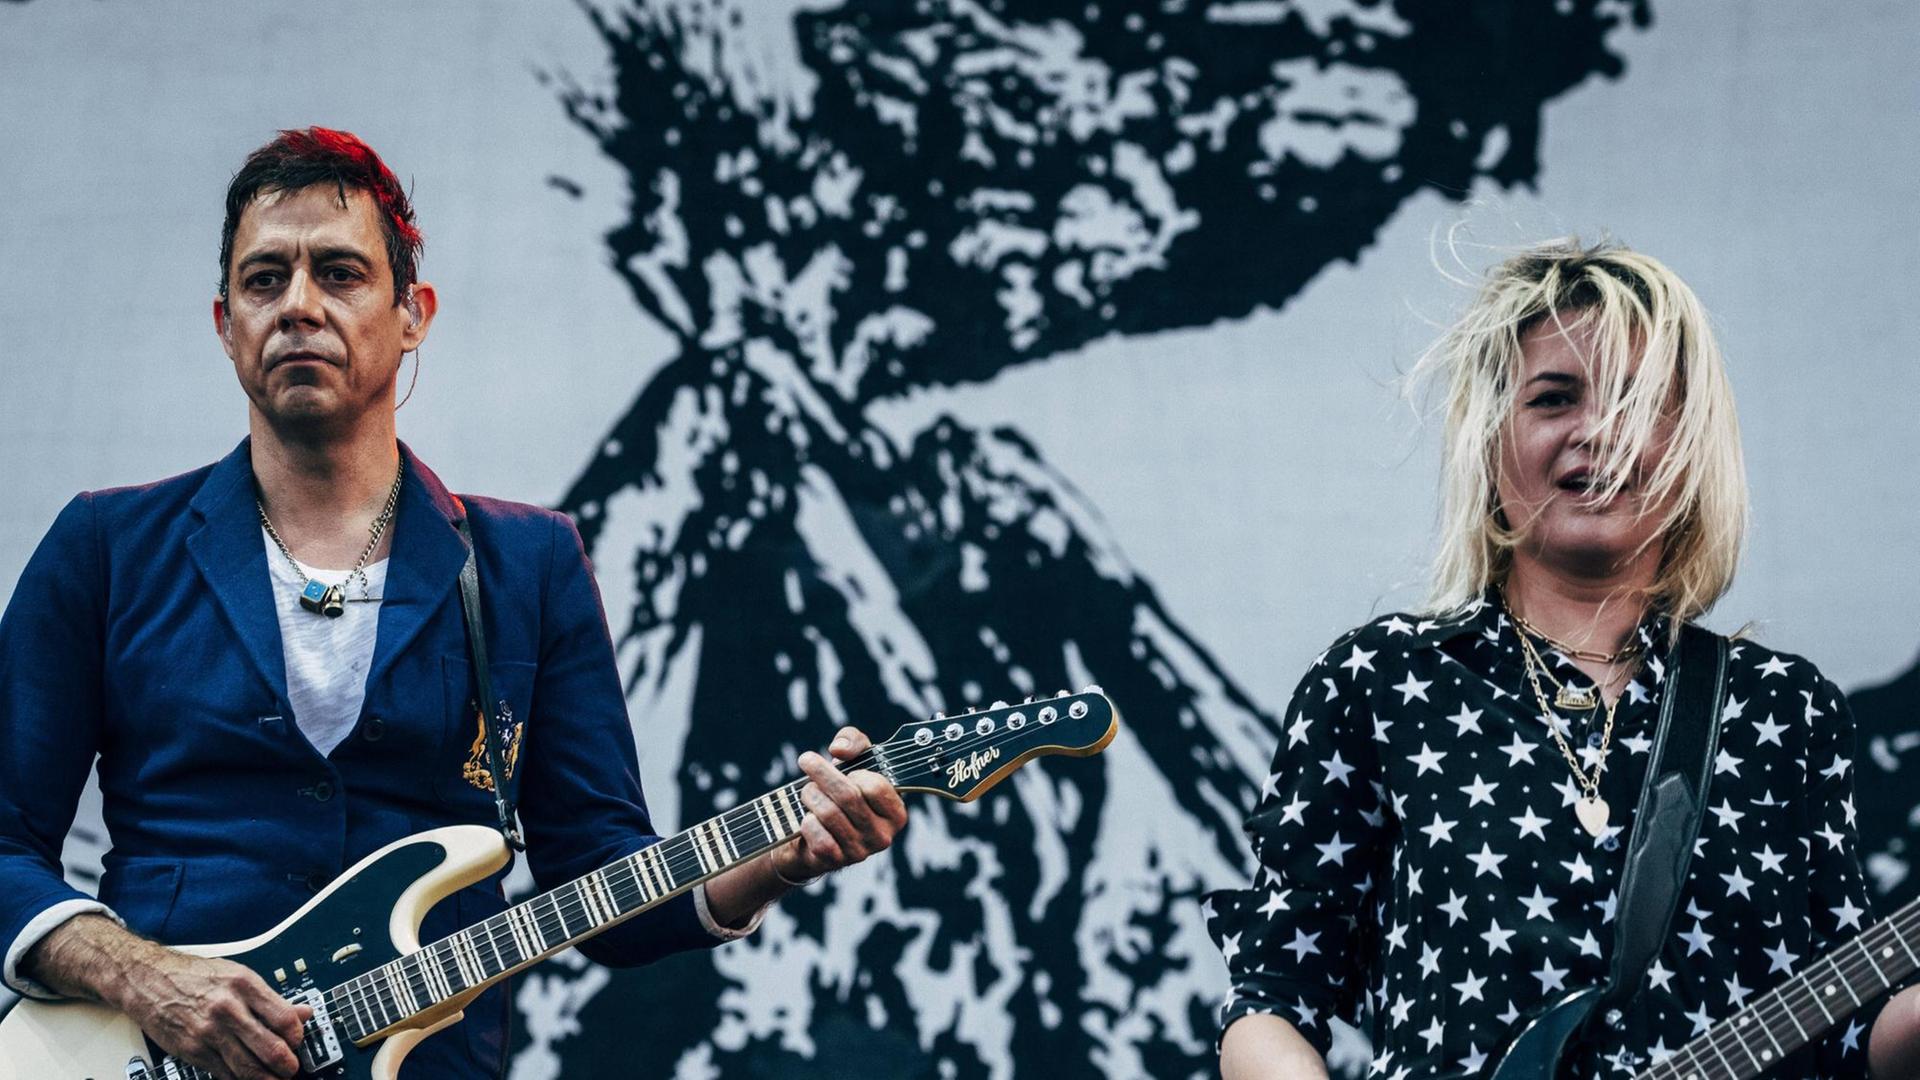 Ein Mann mit kurzen schwarzen Haaren und eine blonde Frau stehen jeweils mit einer Elektro-Gitarre vor dem Bauch auf einer Bühne.